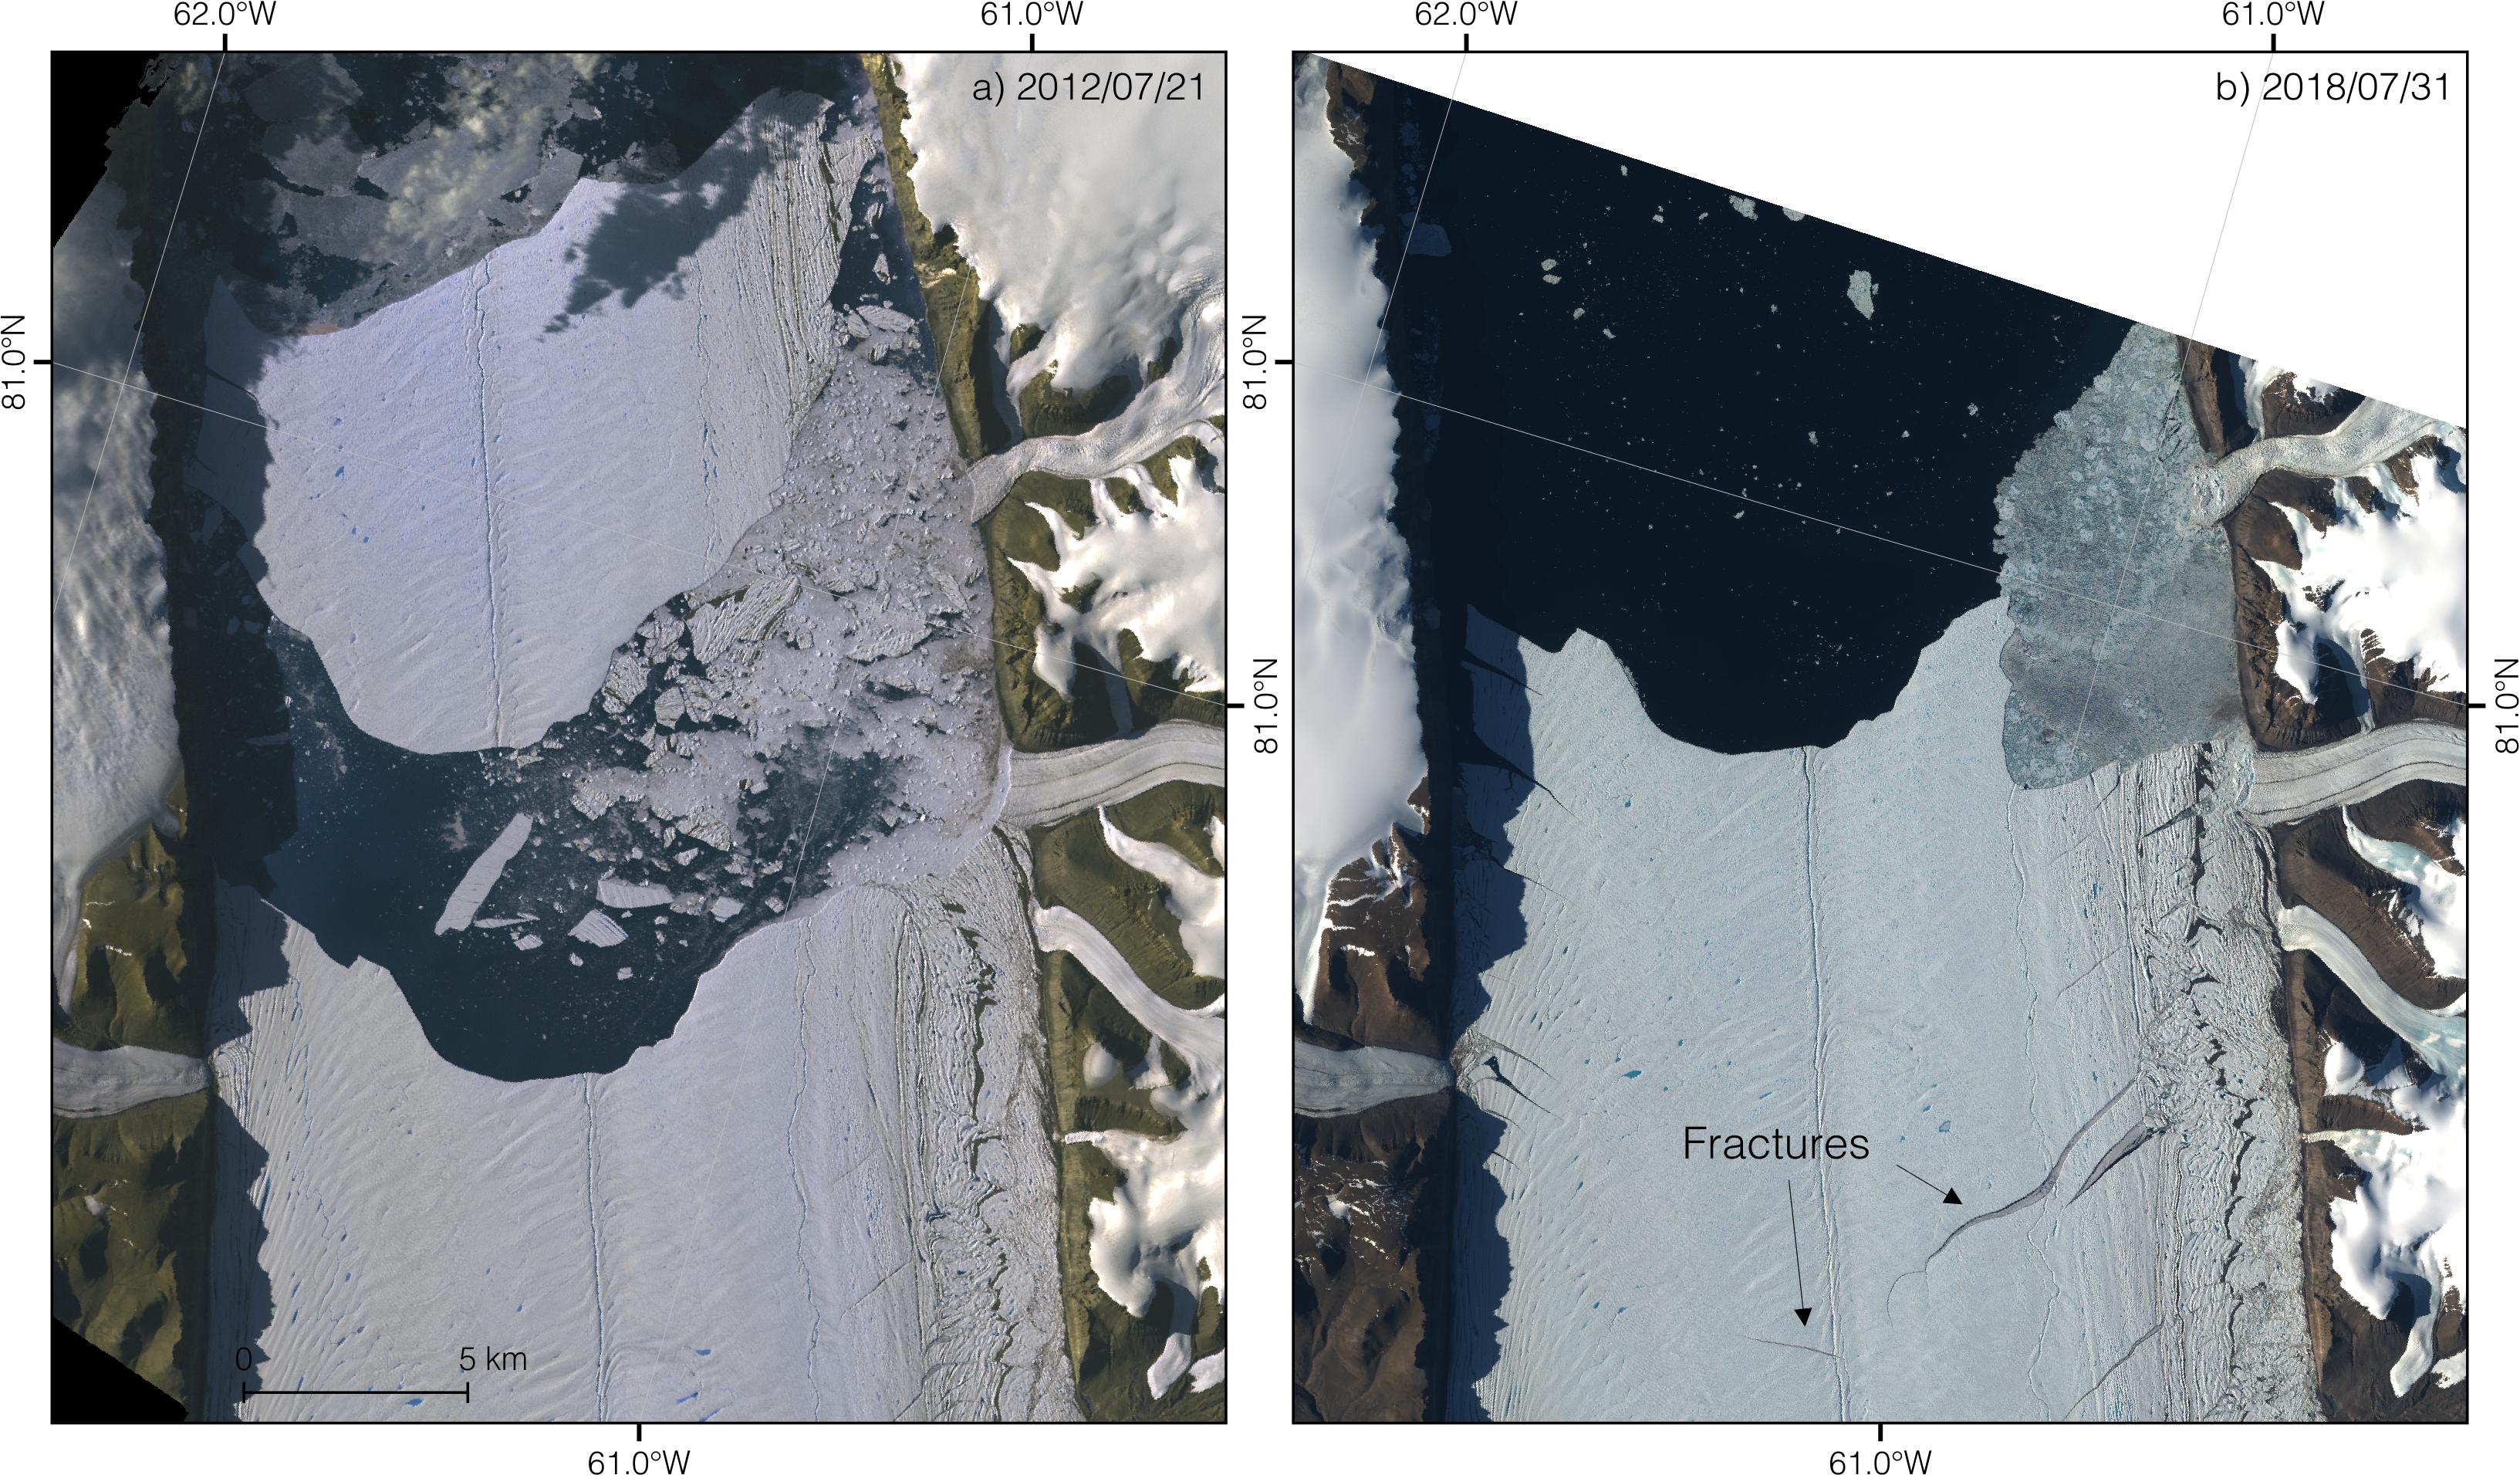 À gauche, le glacier Petermann vu par le satellite Terra de la Nasa peu après qu'un iceberg se soit détaché de la langue en 2012. À droite, le glacier vu par le satellite Sentinel 2 de l'ESA le 31 juillet 2018. De nouvelles fissures sont visibles, se développant depuis le versant est du fjord jusqu'au milieu de la langue. © Nasa/JPL/ESA